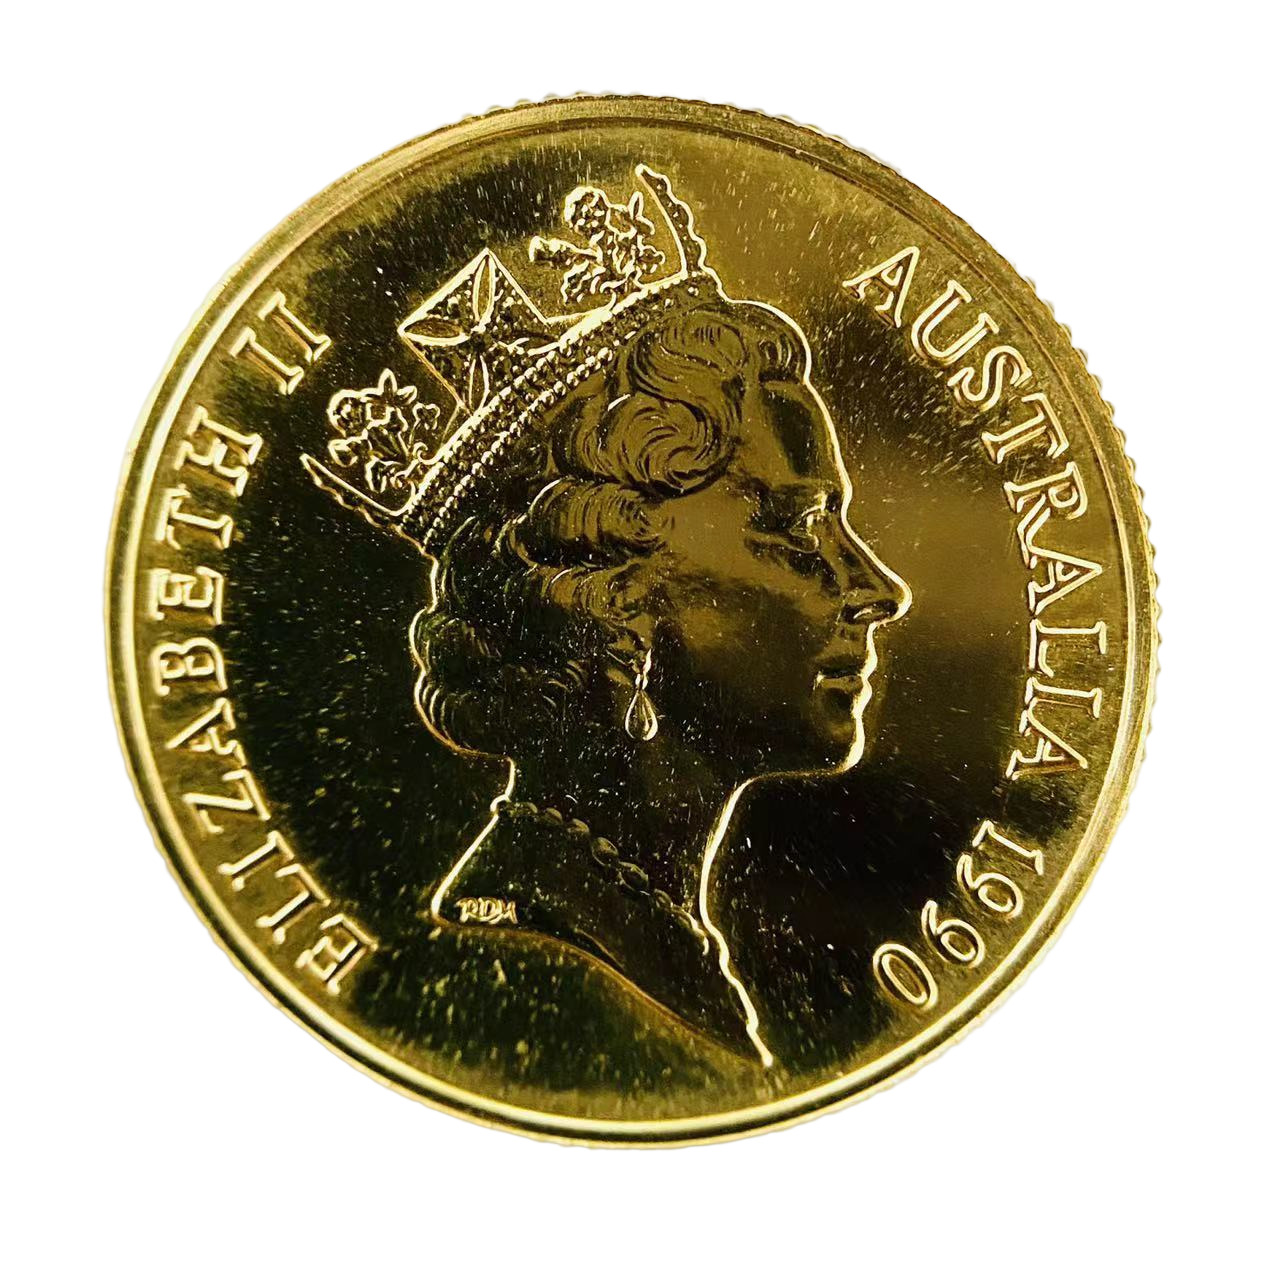 マルク アンティークコイン ドイツ帝国10マルク硬貨1888年 激レア